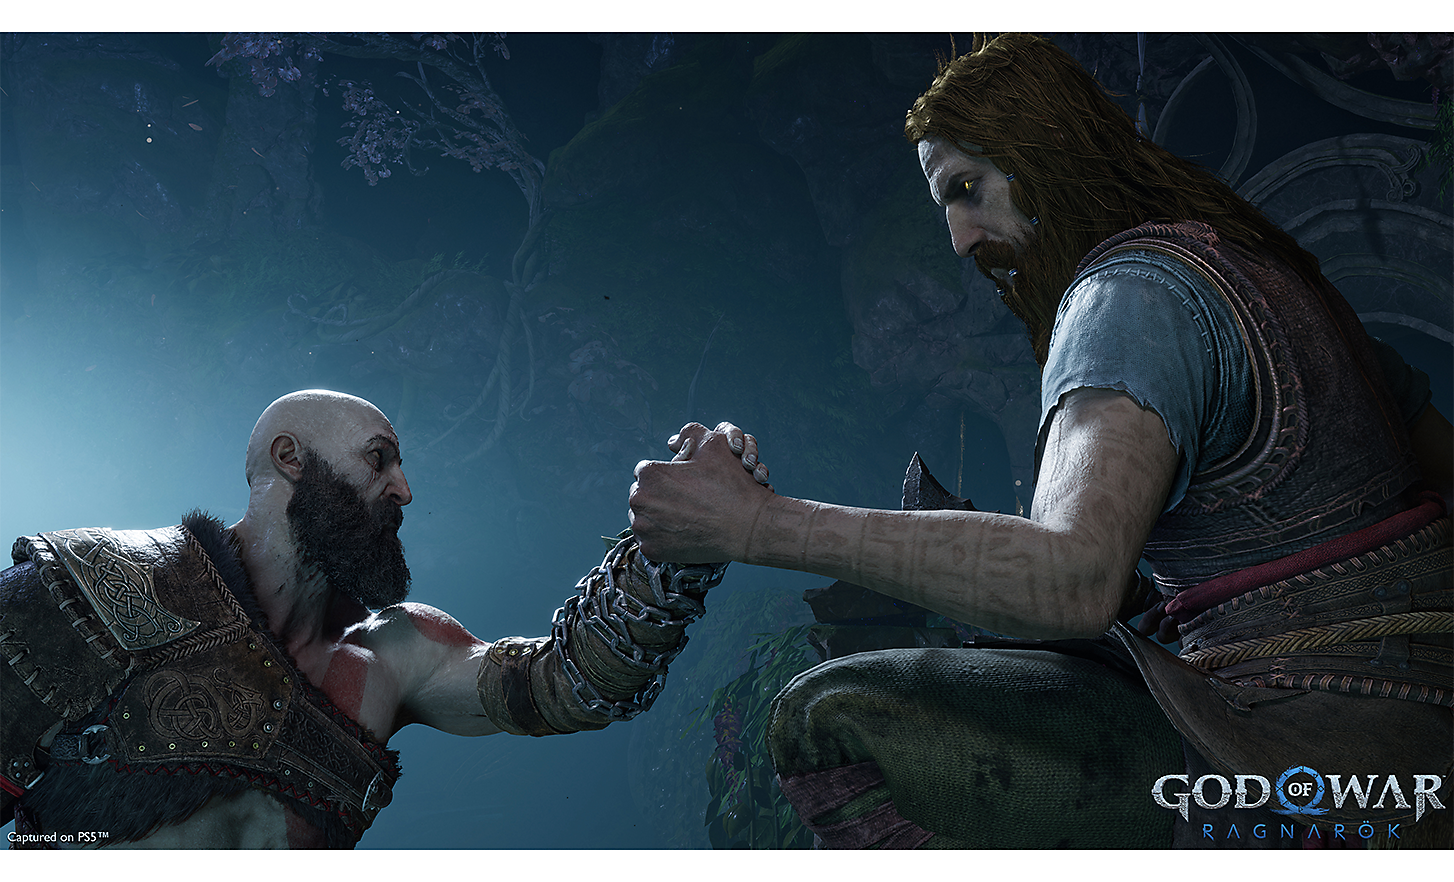 Scena iz igre „God of War: Ragnarok“ prikazuje rukovanje dvojice ratnika